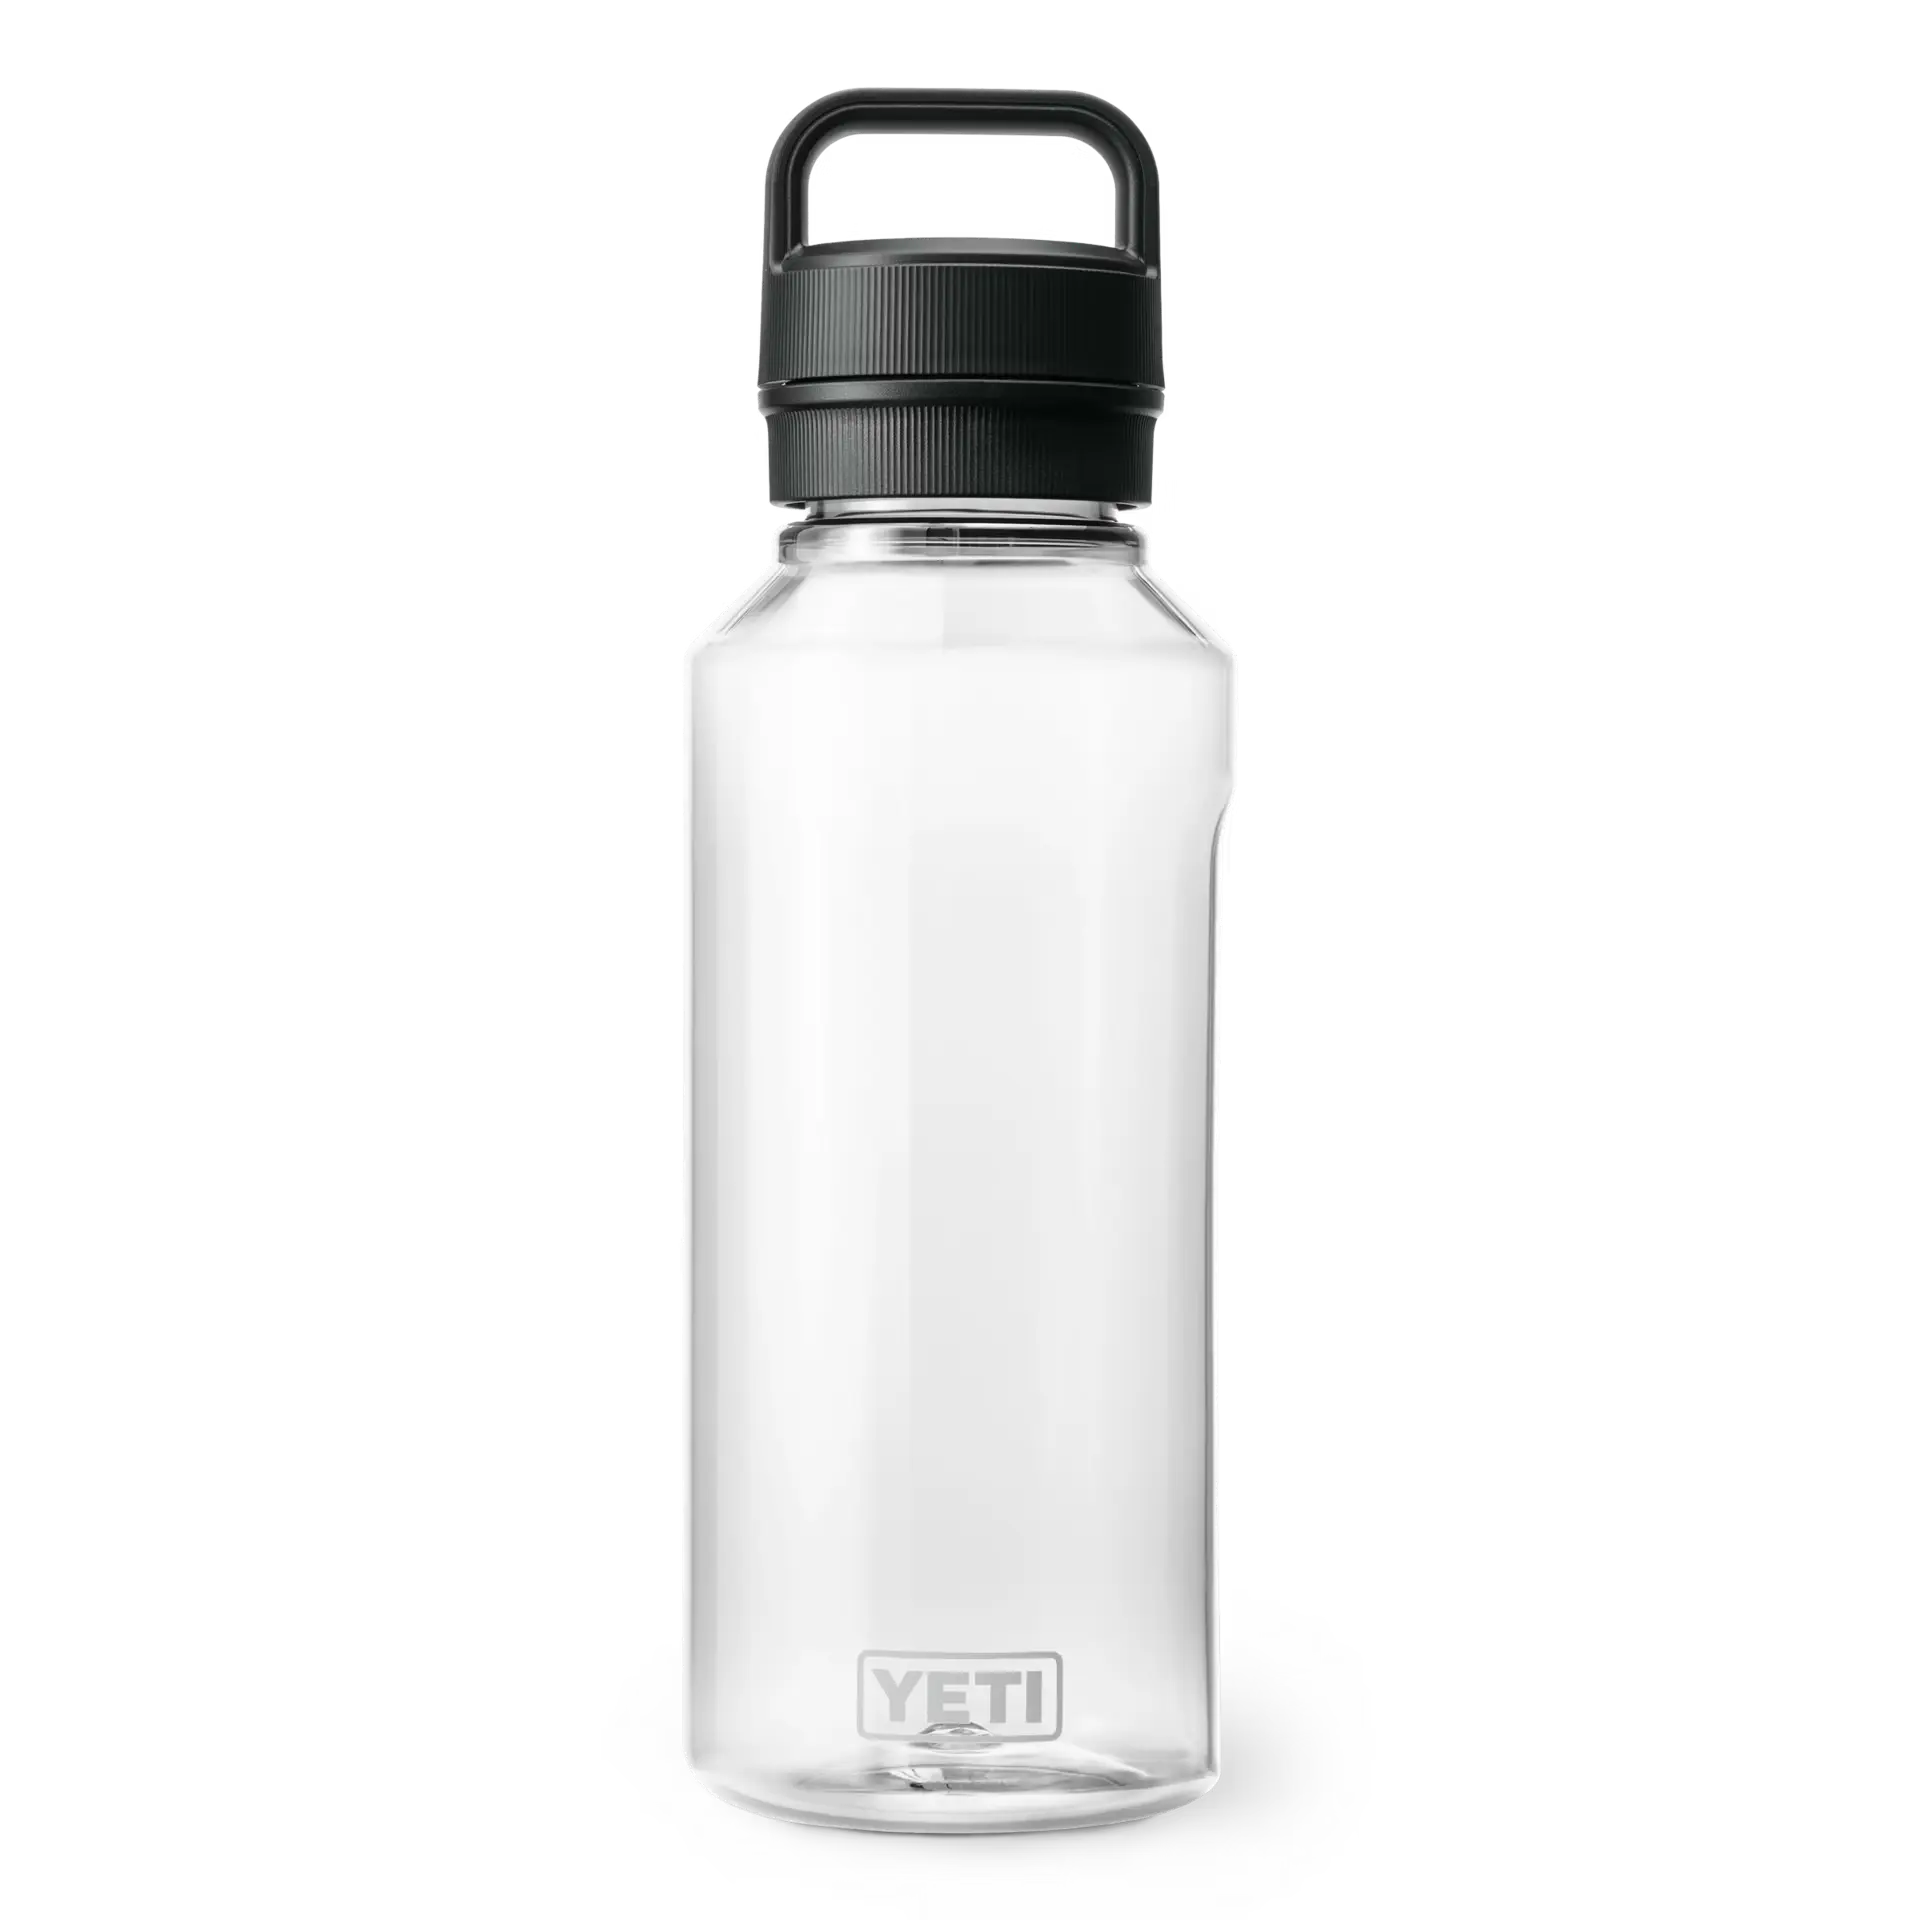 A YETI Yonder Bottle, clear 50 oz water bottle.